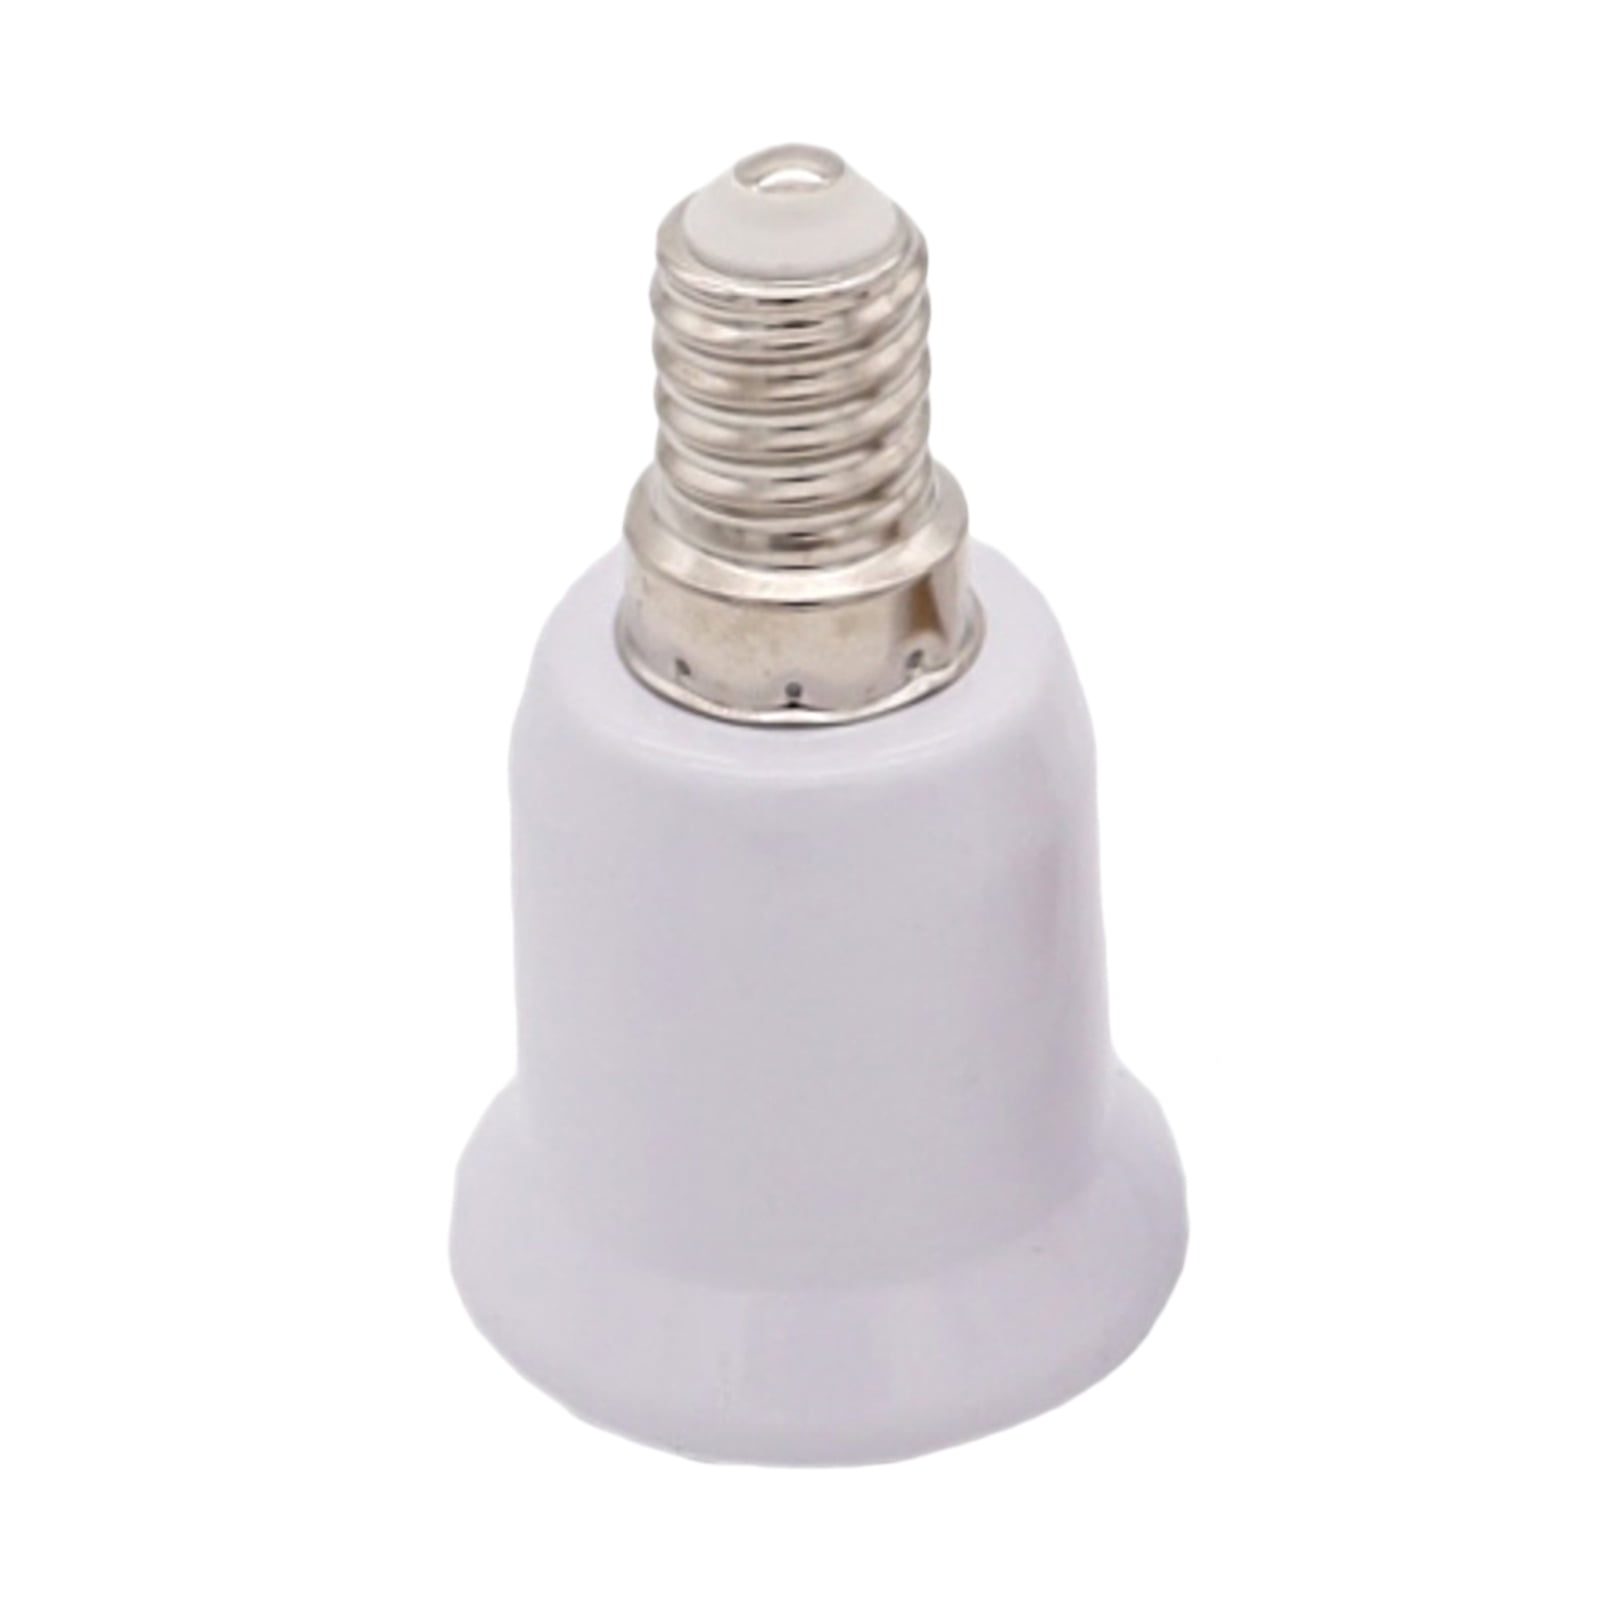 Porcelain Socket E14 Lights Lamp Socket White 